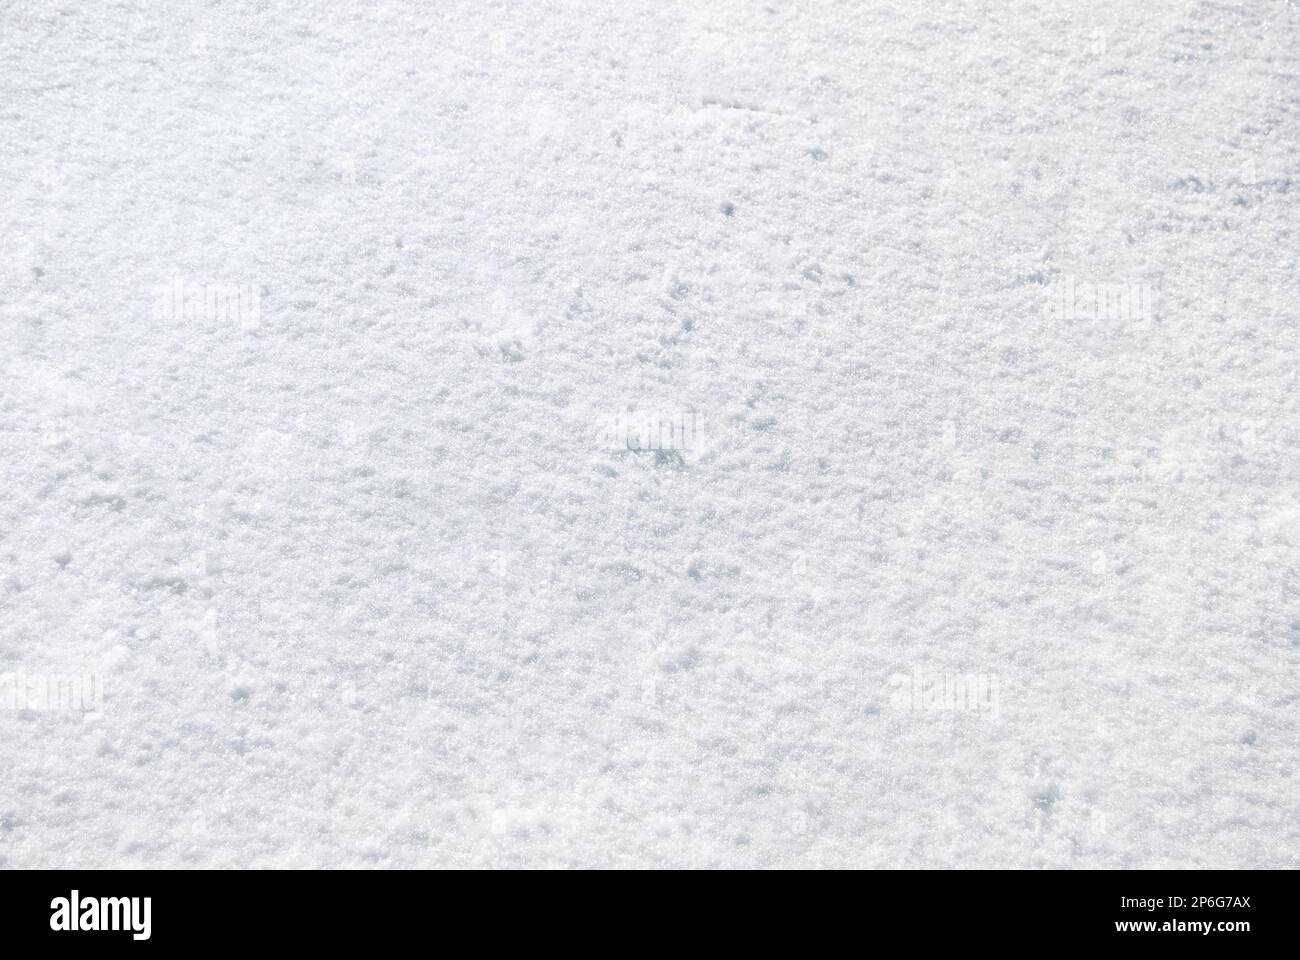 Frischer weißer Schnee im Hintergrund Stockfoto